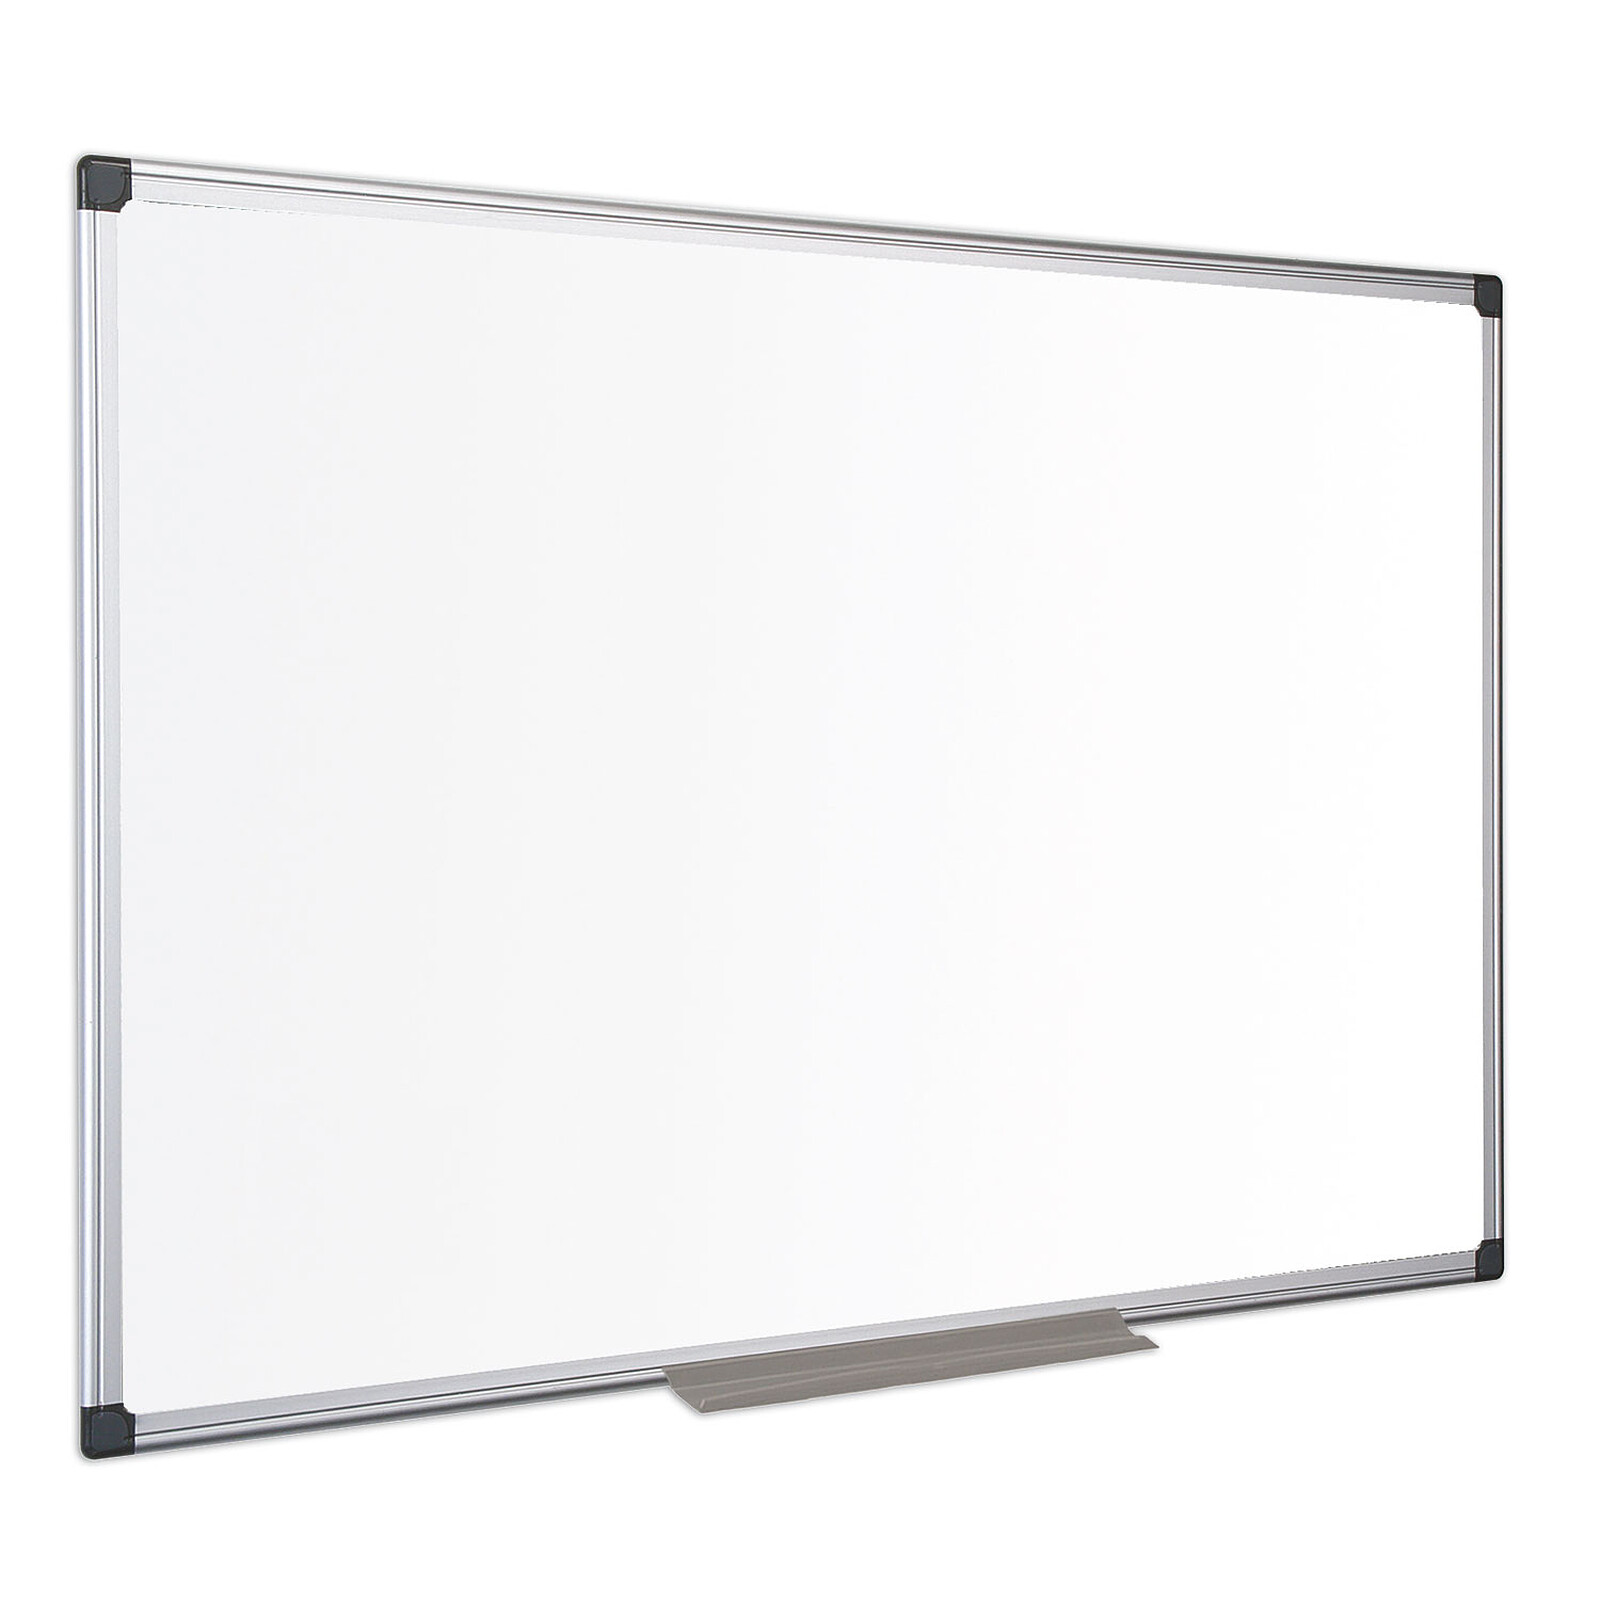 Rocada Tableau blanc métallique 75 x 115 cm - Tableau blanc et paperboard -  Garantie 3 ans LDLC